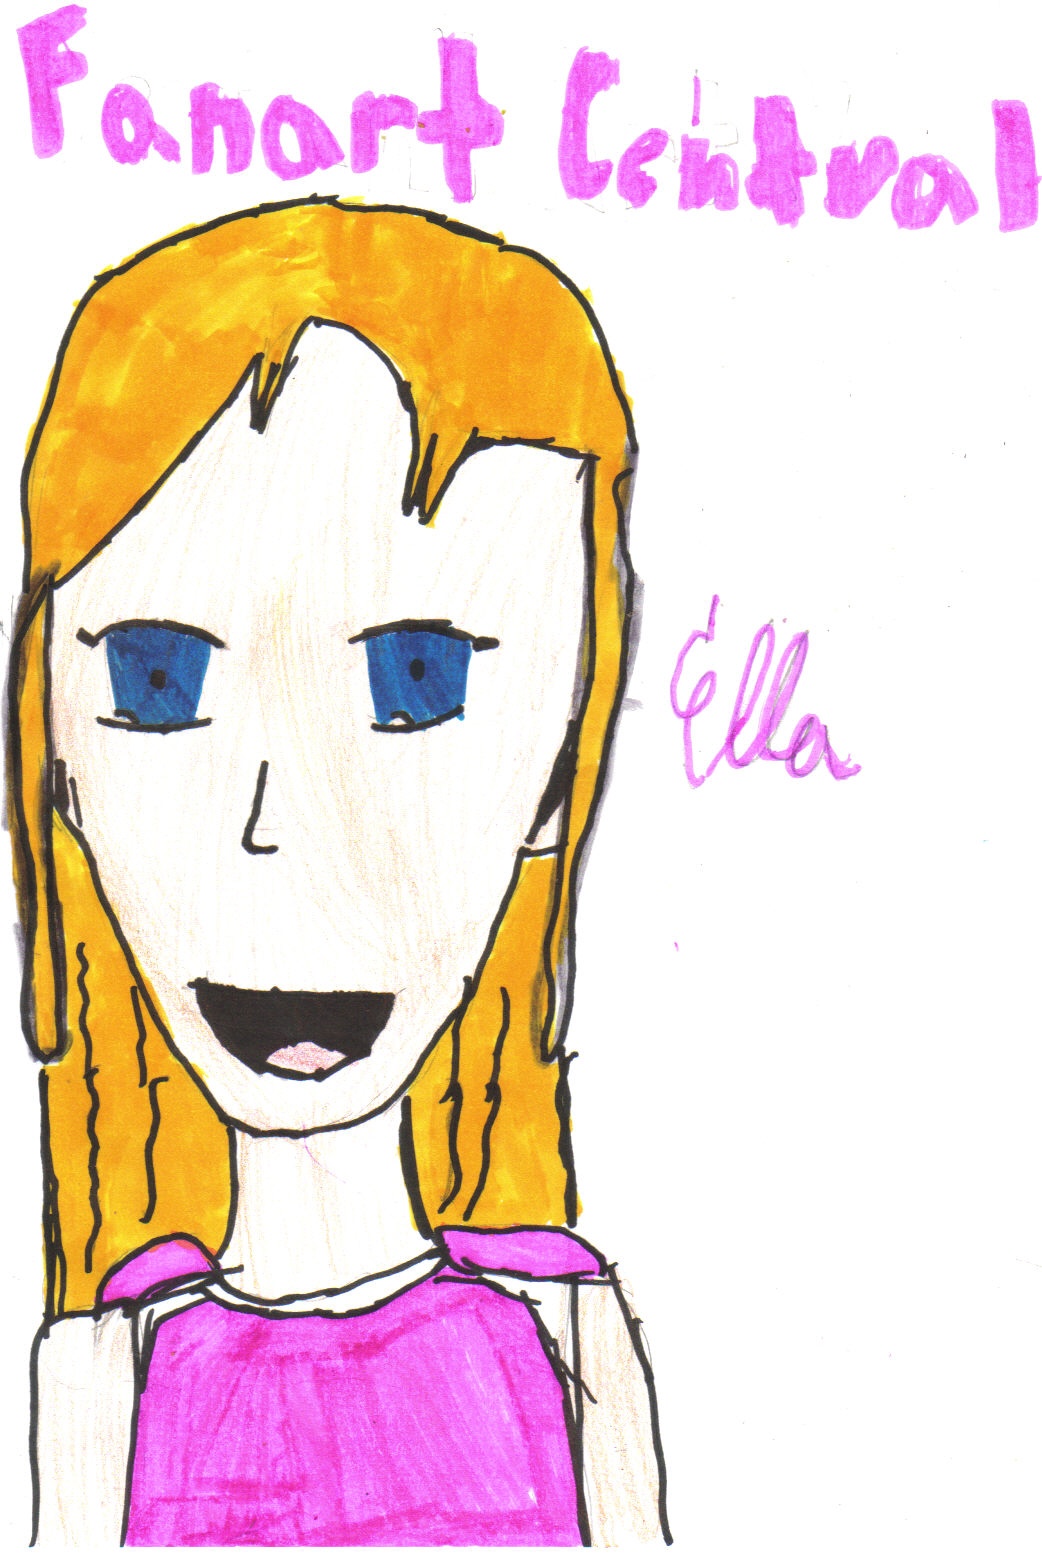 Ella!(me) by sweetpinkpony600